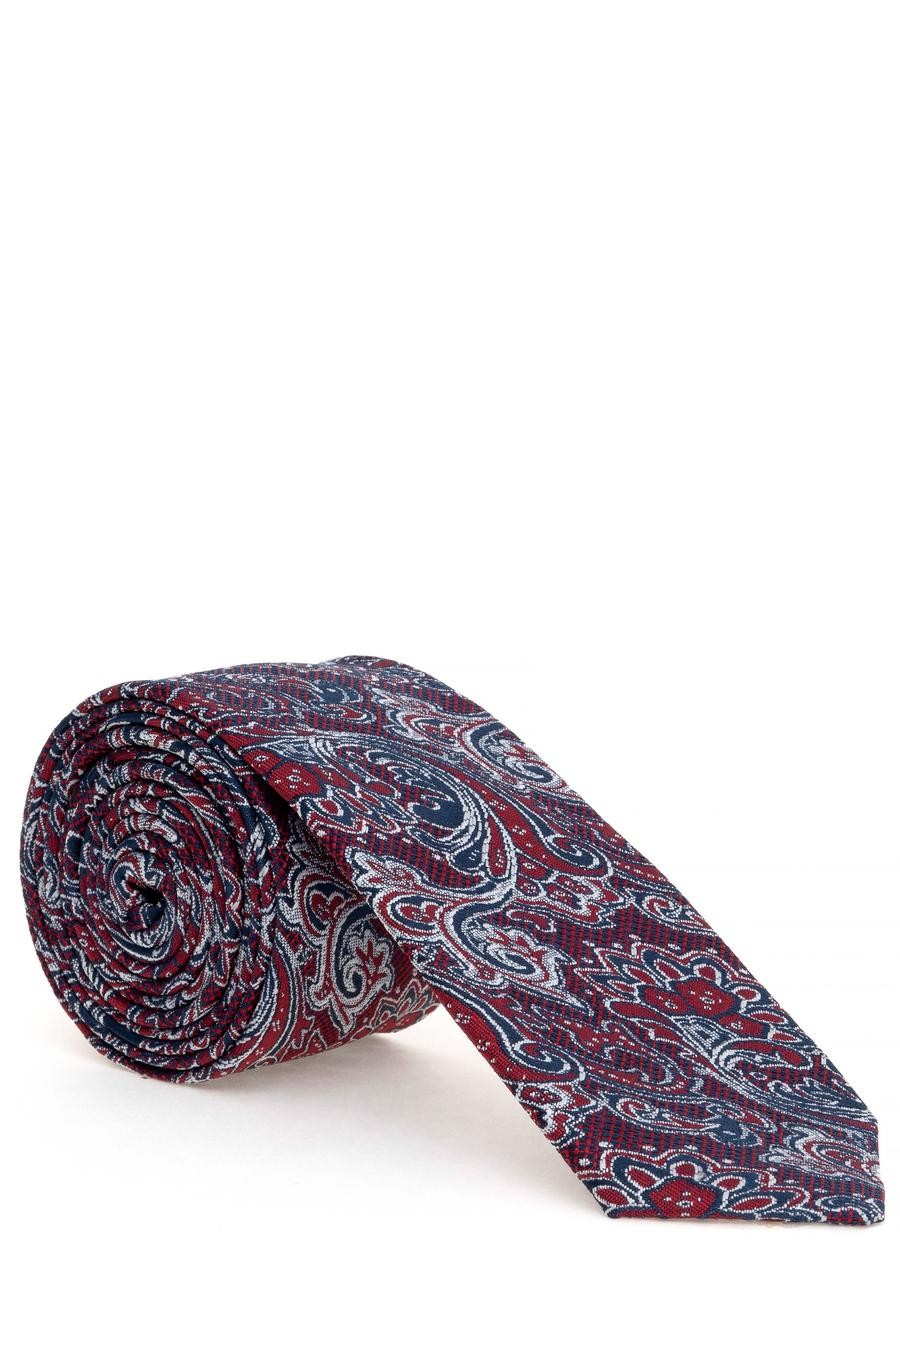 ست دستمال جیب و کراوات  قرمز  استاندارد  مردانه  پیرکاردین